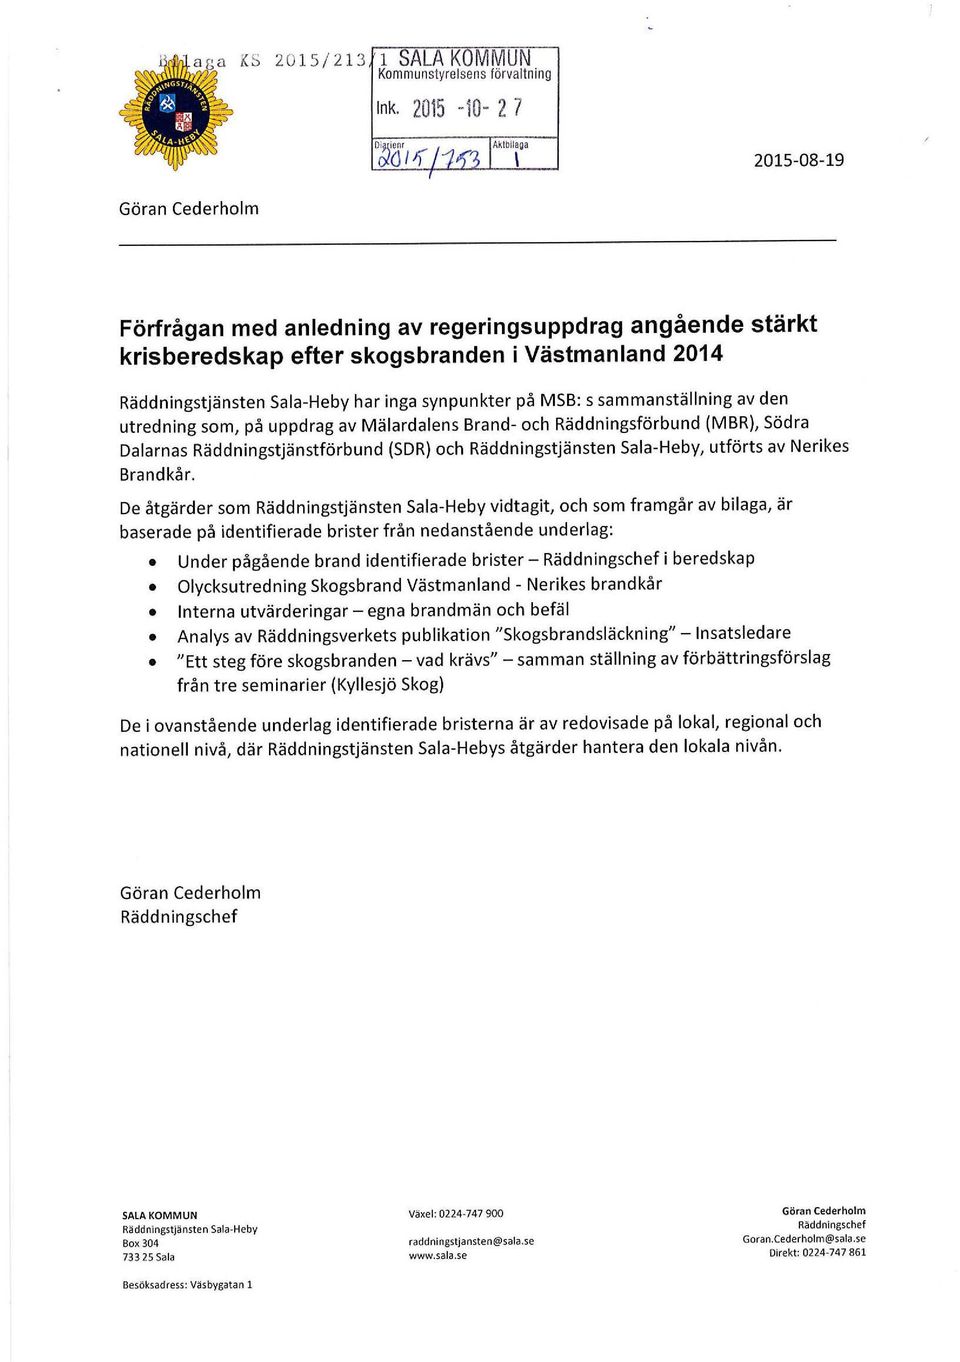 MSB: s sammanställning av den utredning som, på uppdrag av Mälardalens Brand- och Räddningsförbund (MBR), Södra Dalarnas Räddningstjänstförbund (SDR) och Räddningstjänsten Sala-Heby, utförts av